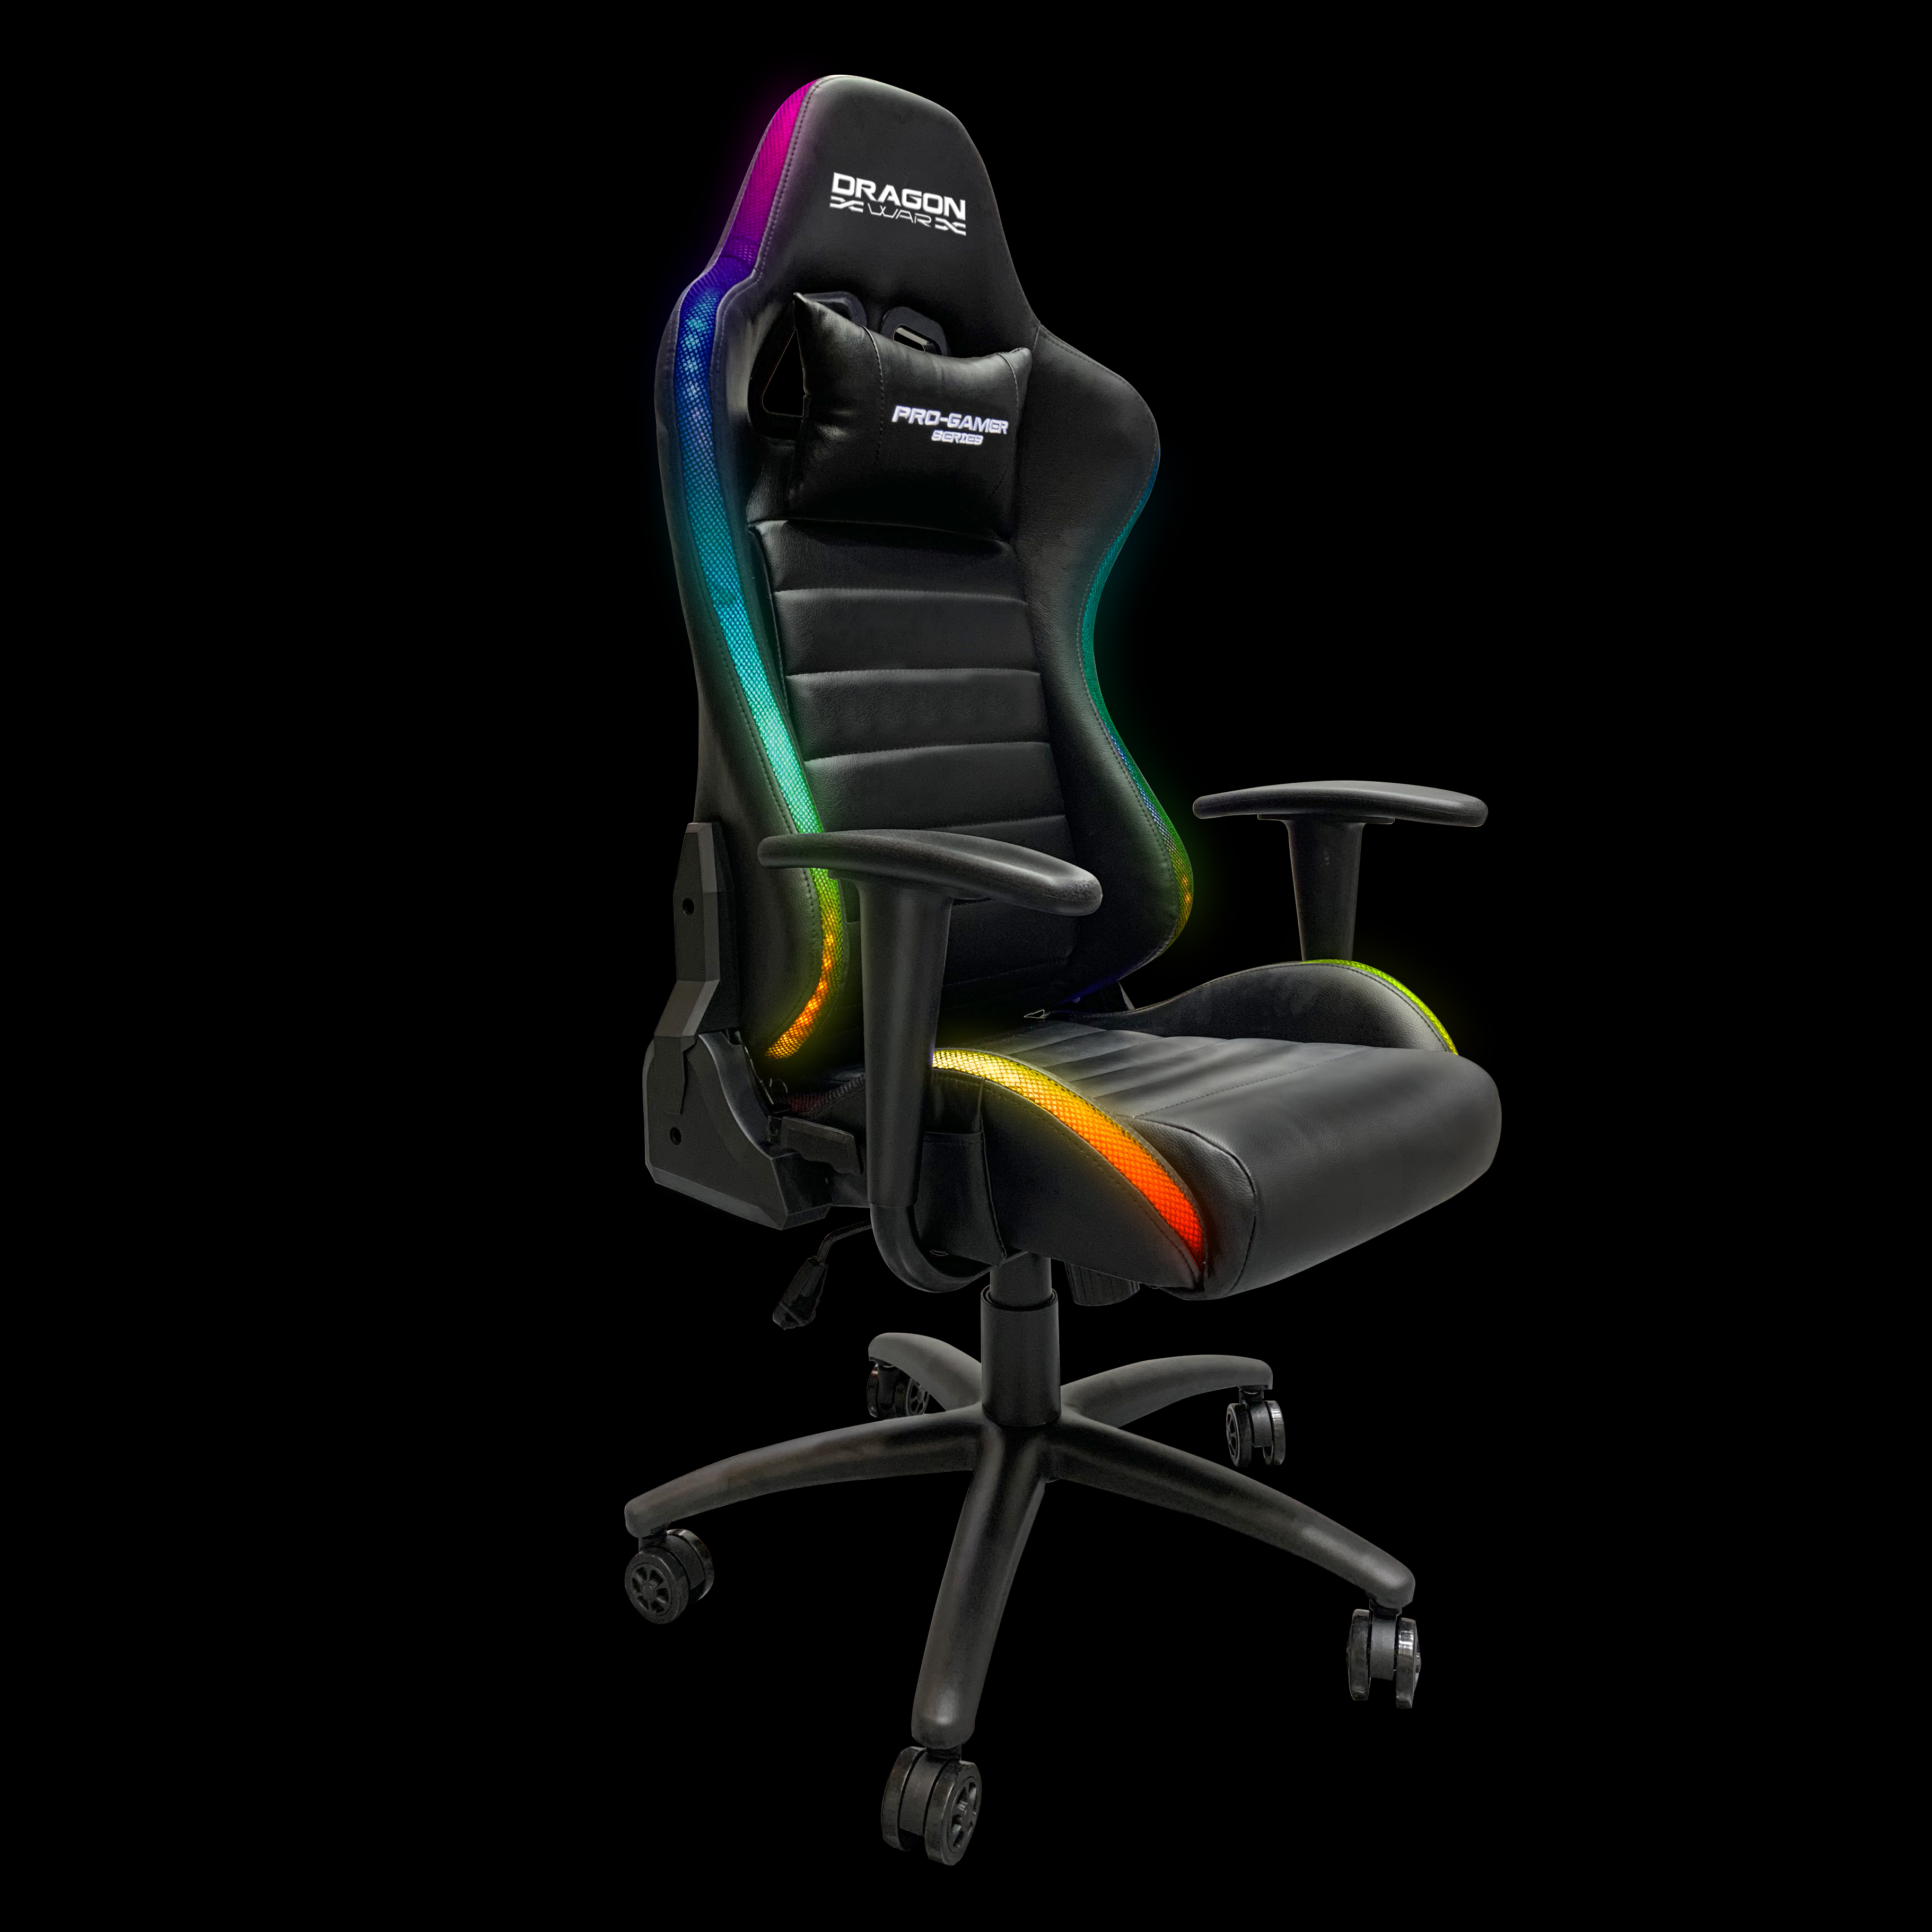 DragonWar RGB Lighting Effect Gaming Chair